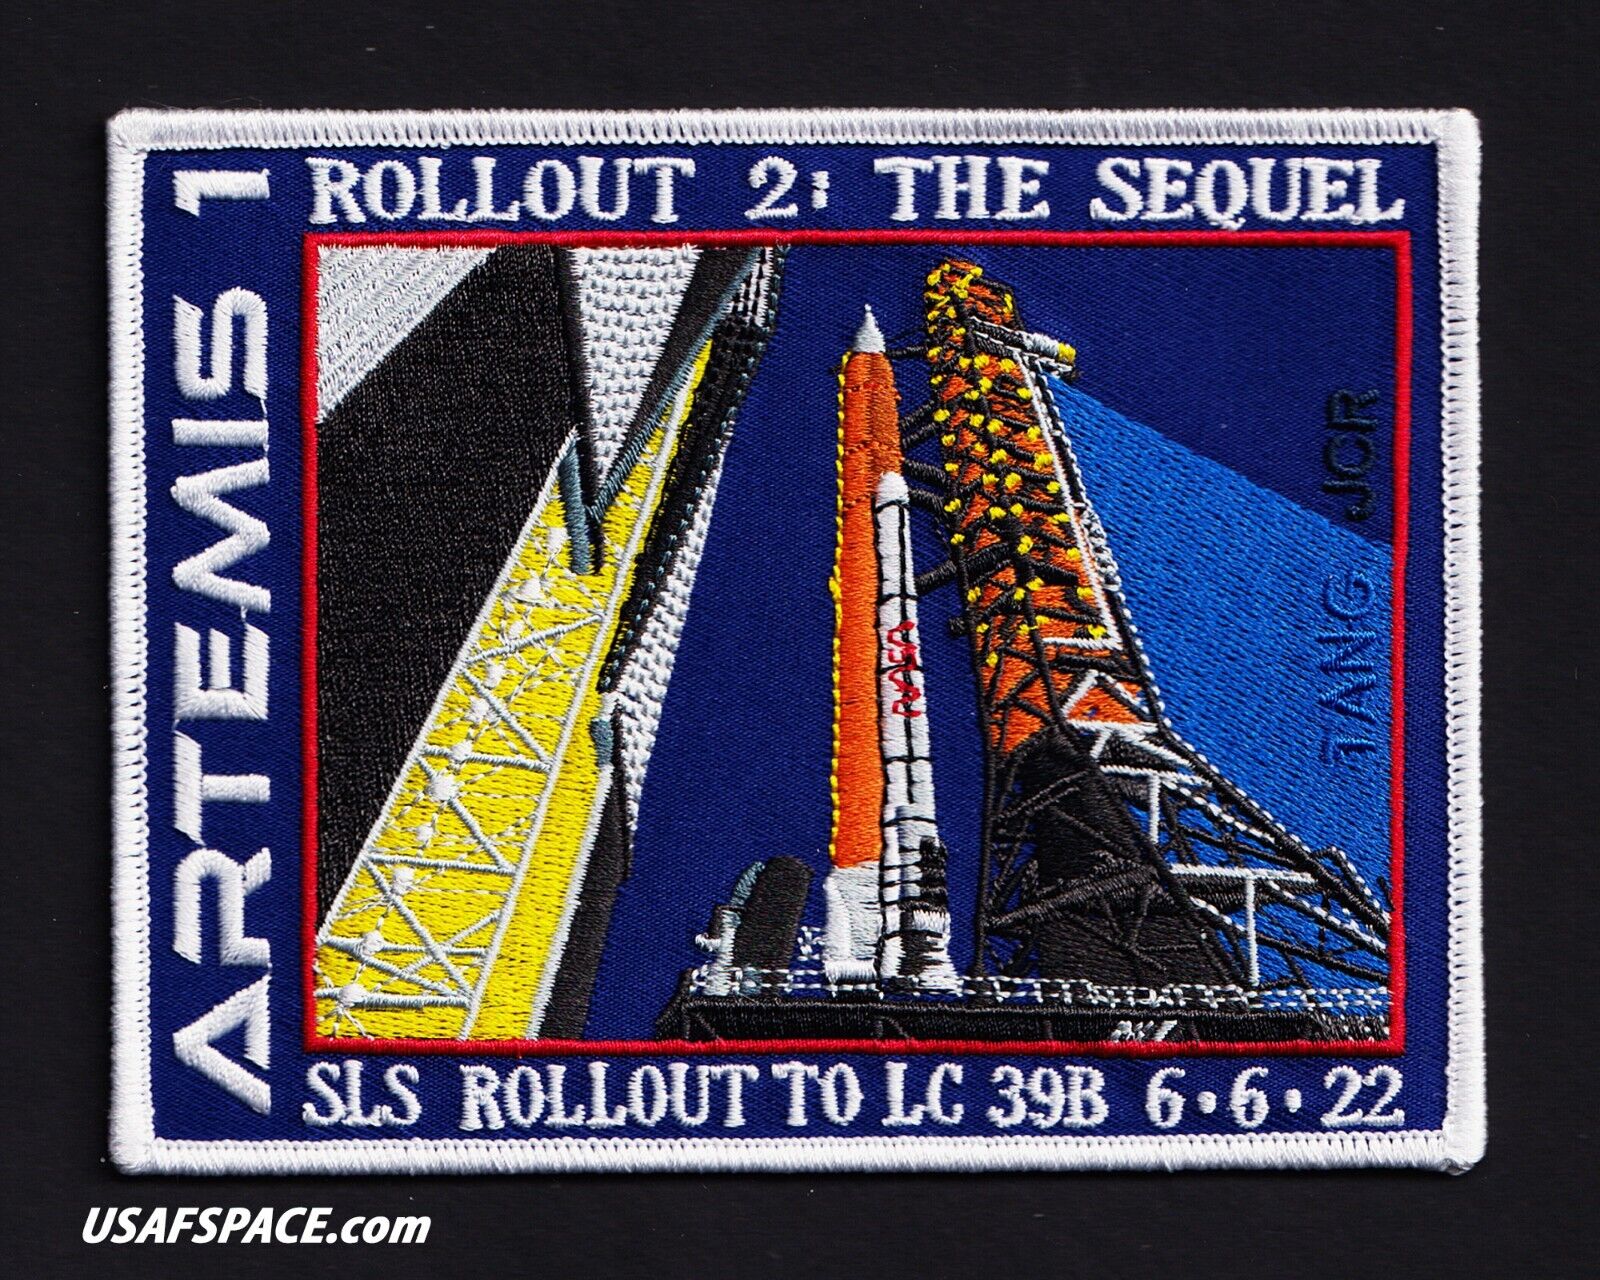 ARTEMIS 1-SLS- ROLLOUT -2- THE SEQUEL -ORIGINAL Tim Gagnon- NASA SPACE PATCH